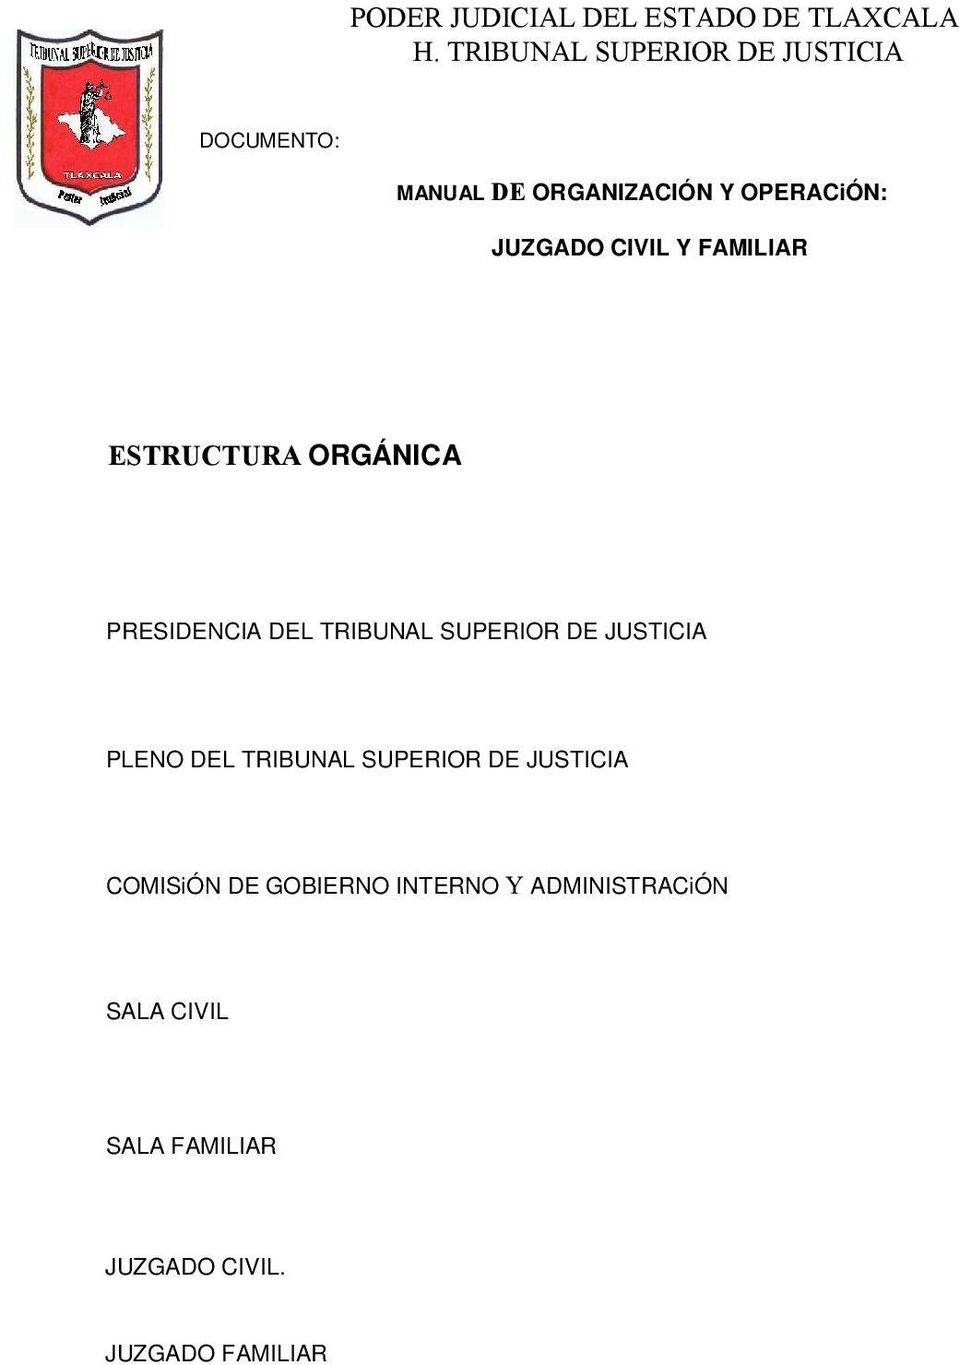 PLENO DEL TRIBUNAL SUPERIOR DE JUSTICIA COMISiÓN DE GOBIERNO